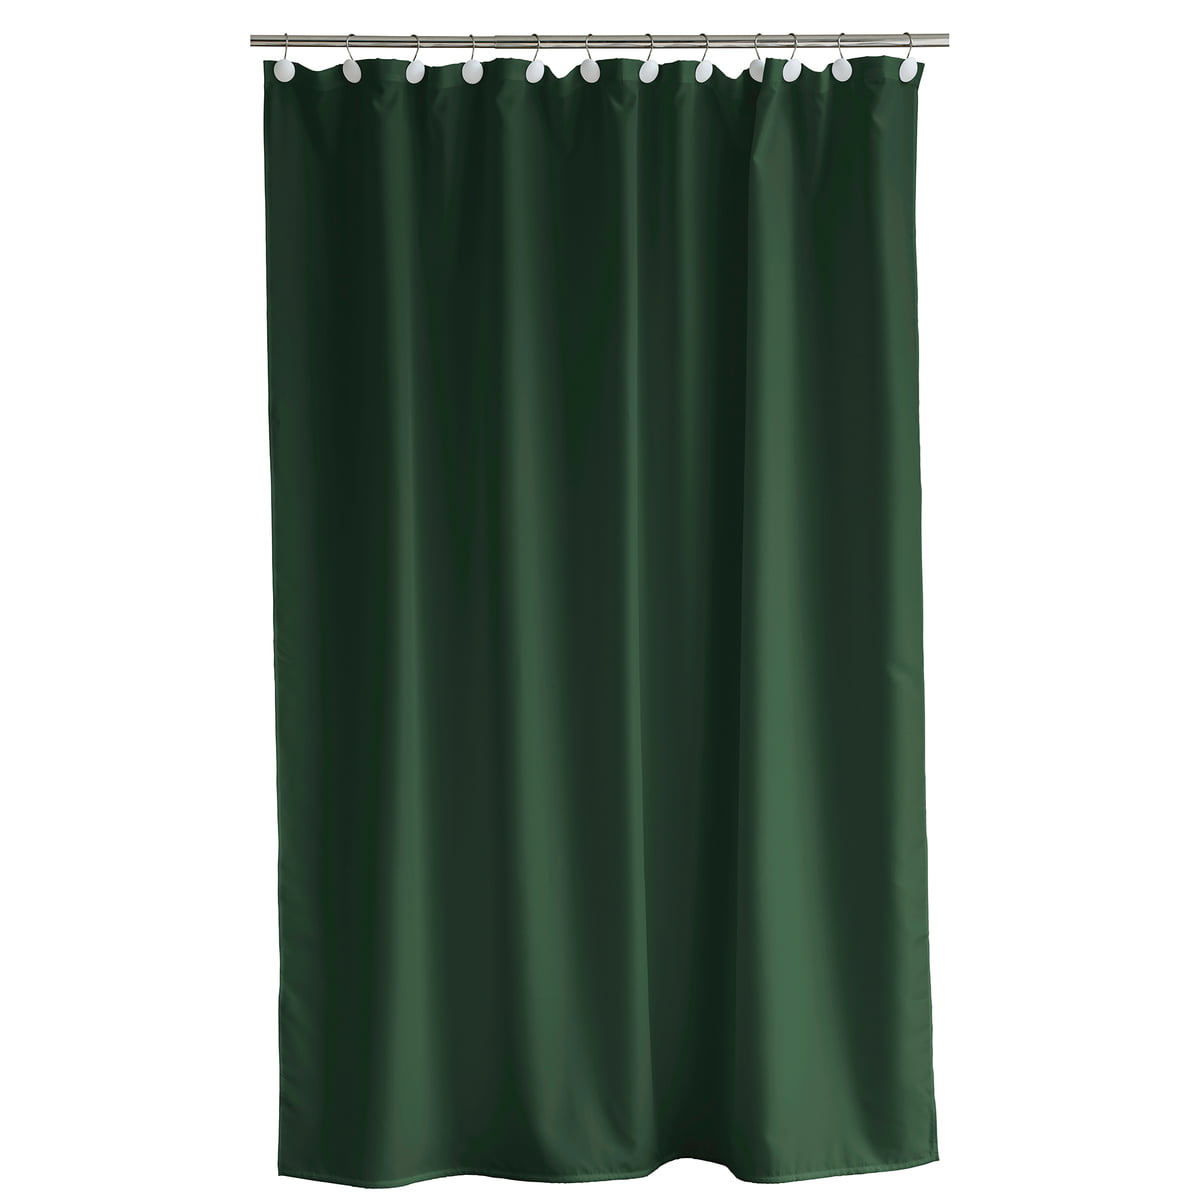 södahl - comfort rideau de douche, 180 x 200 cm, pine green